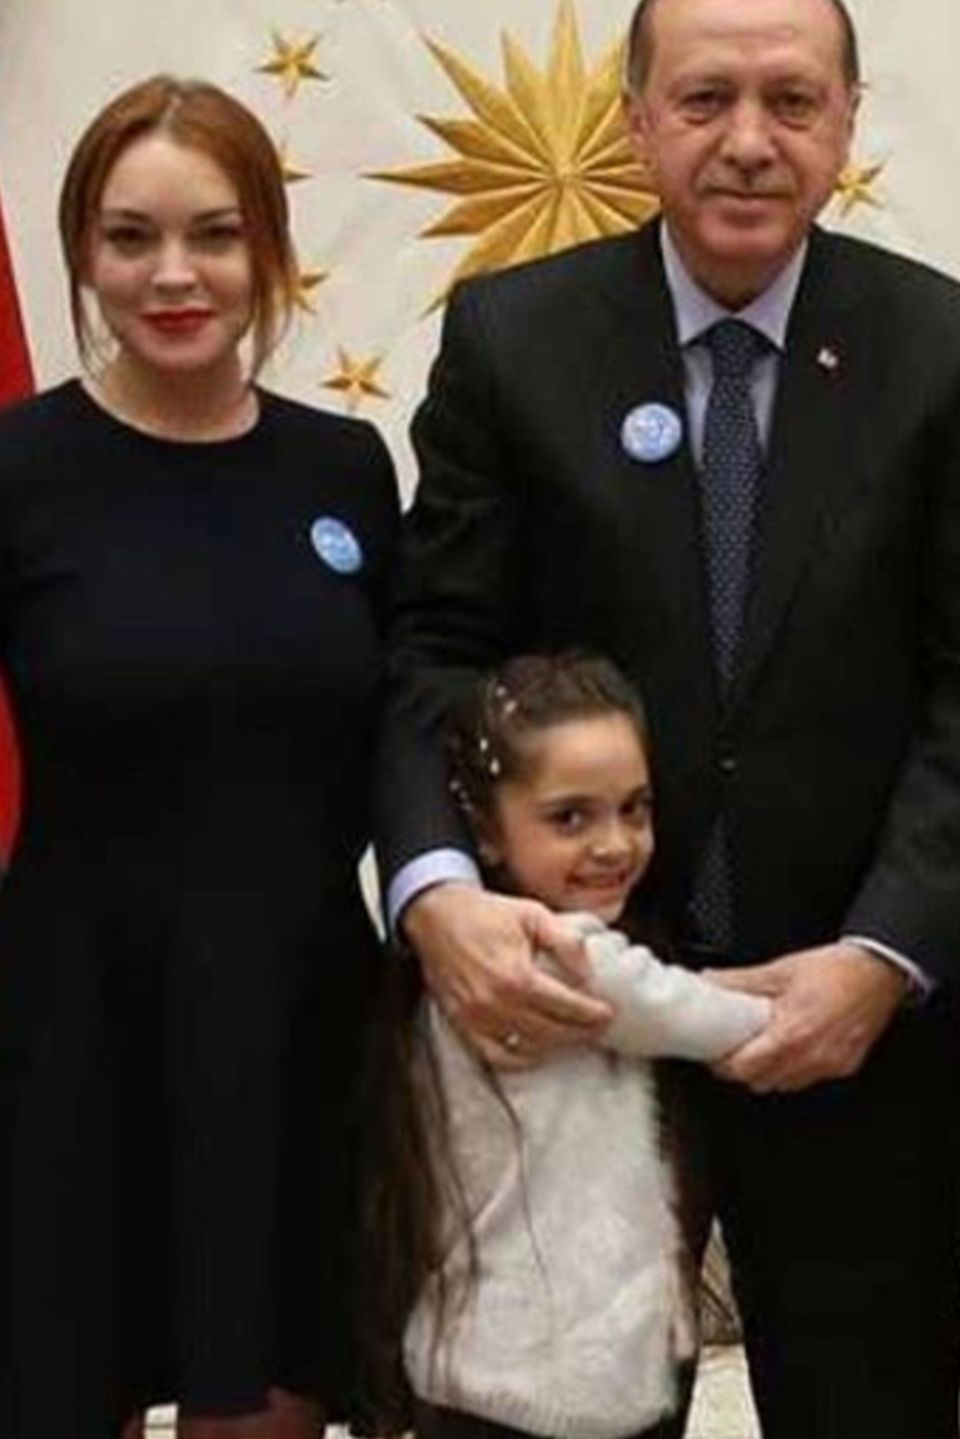 Lindsay Lohan beim türkischen Staatschef Recep Tayyip Erdogan